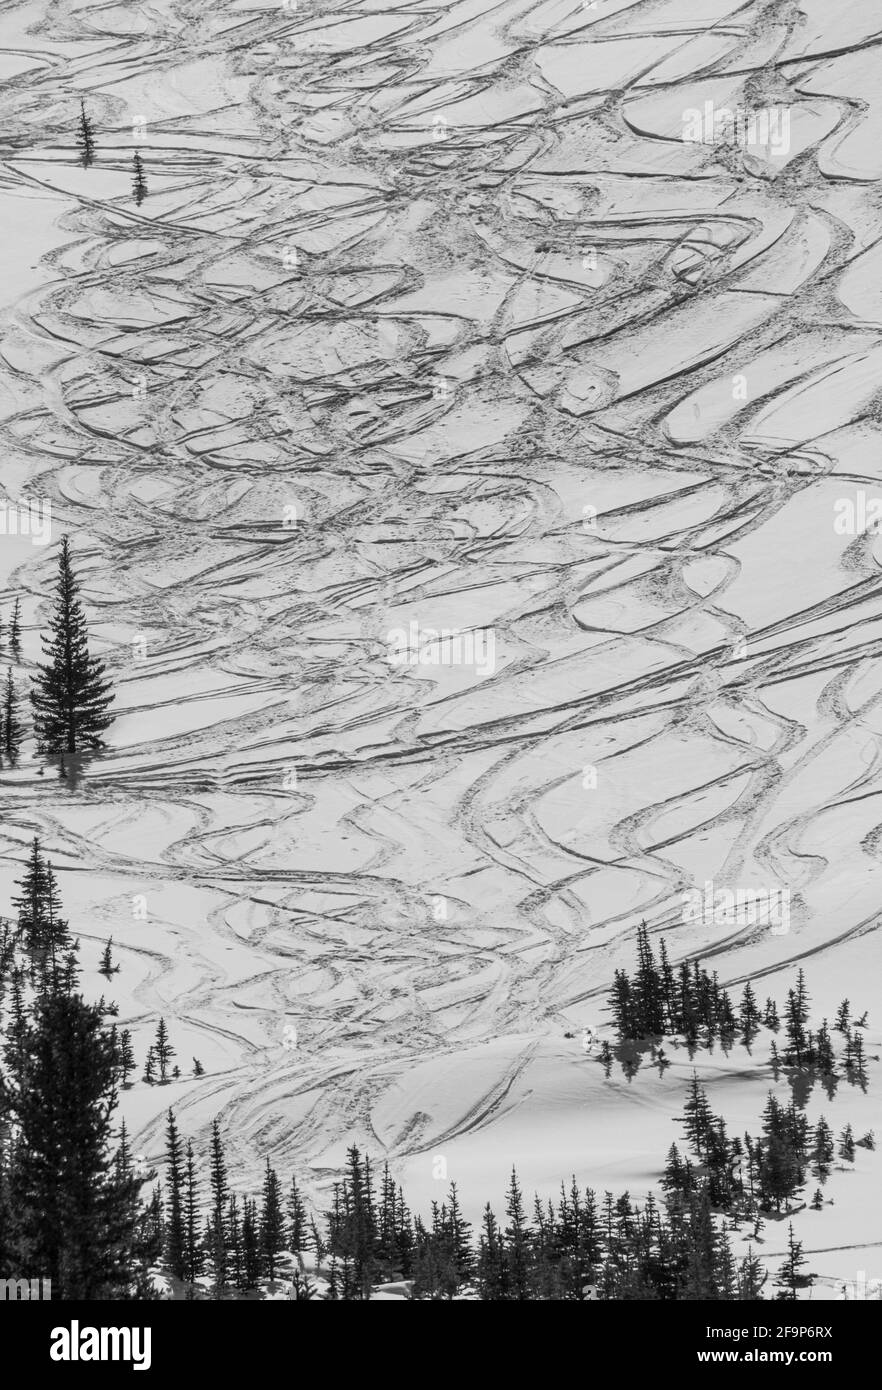 Scène d'hiver Rocheuses canadiennes, parc national Banff, Alberta, Canada Banque D'Images